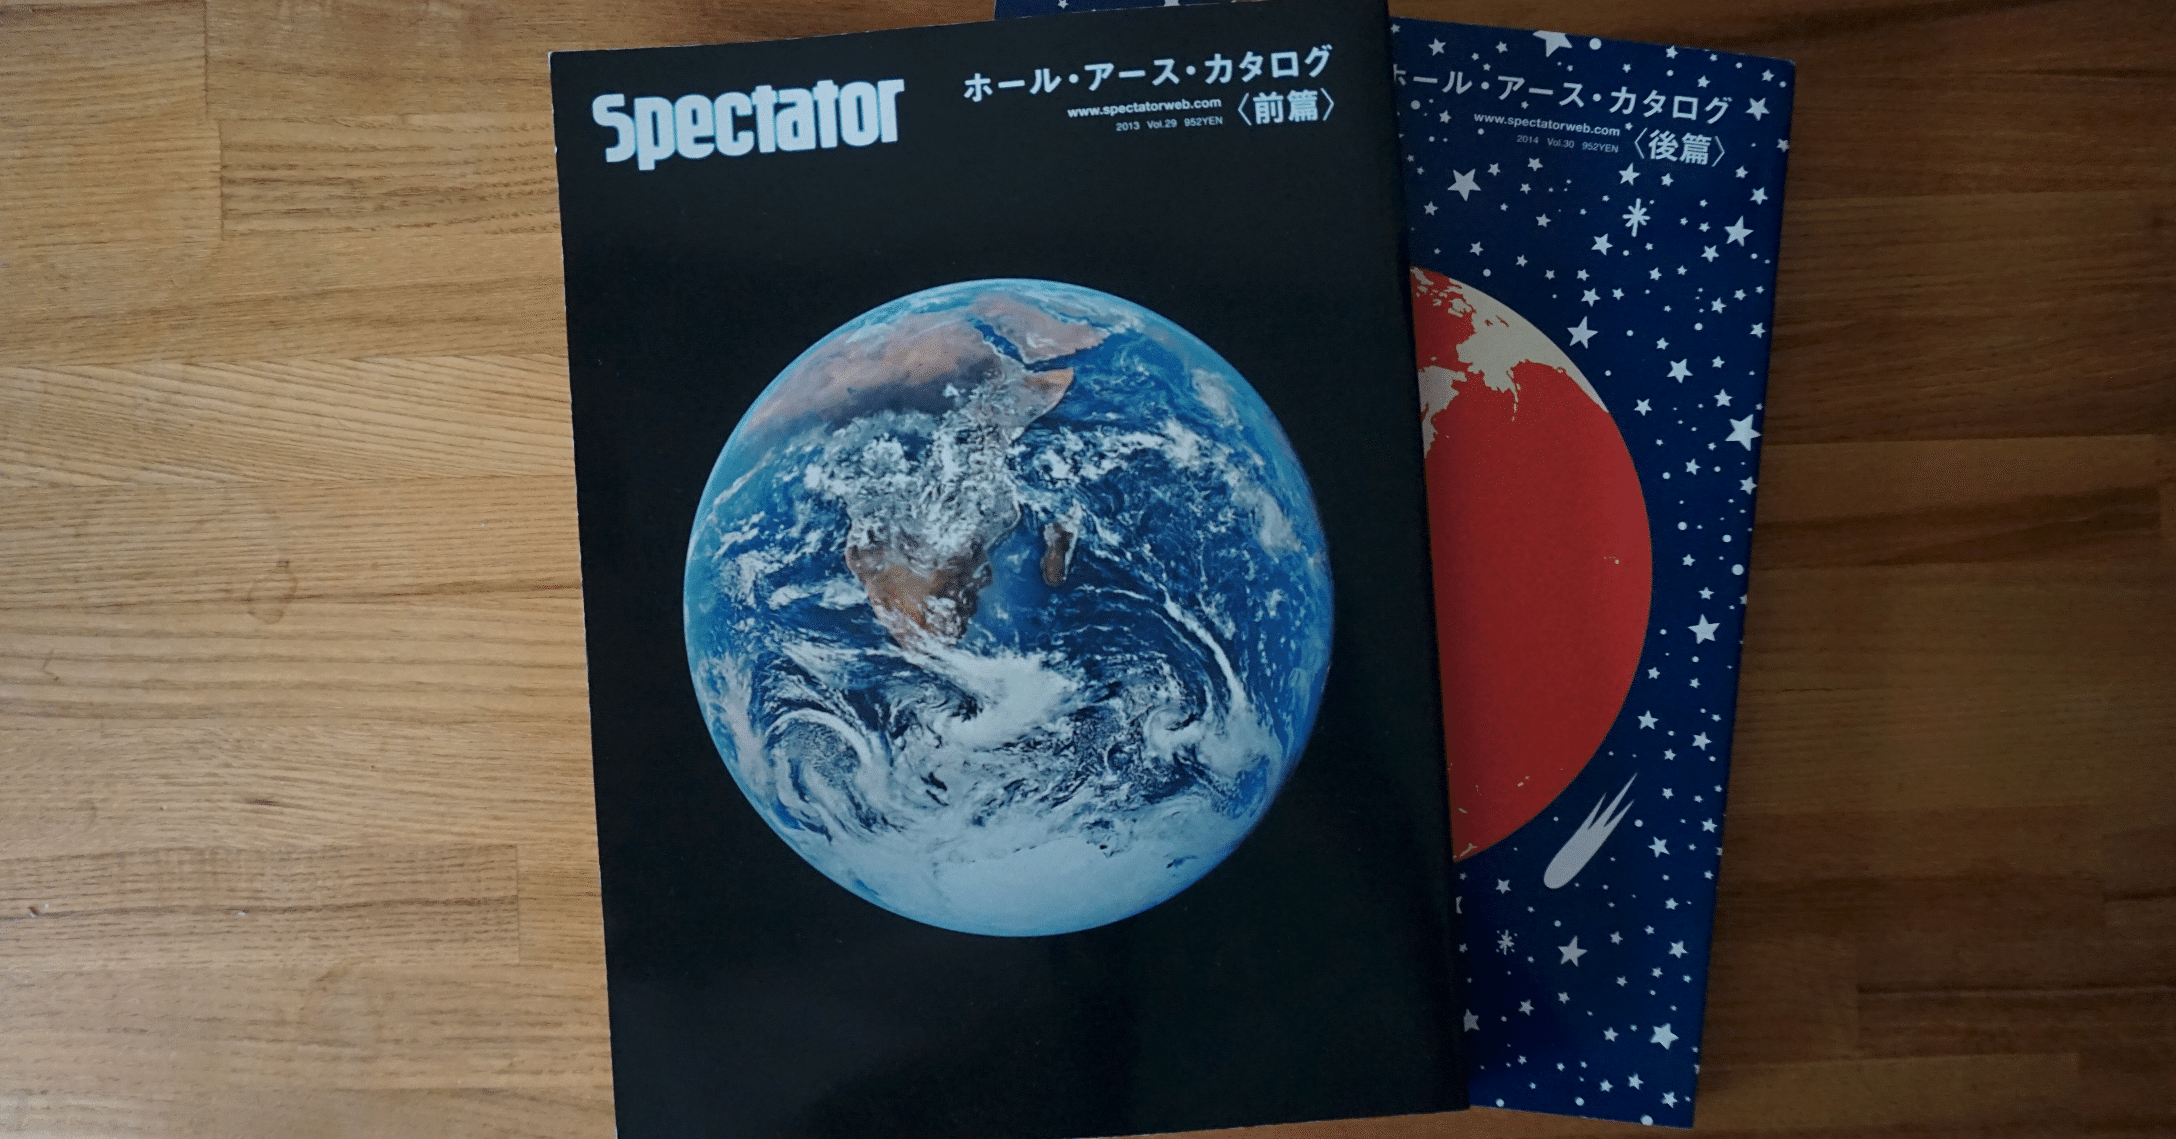 Spectator Vol.29 & 30 ホールアースカタログ 前篇&後篇-